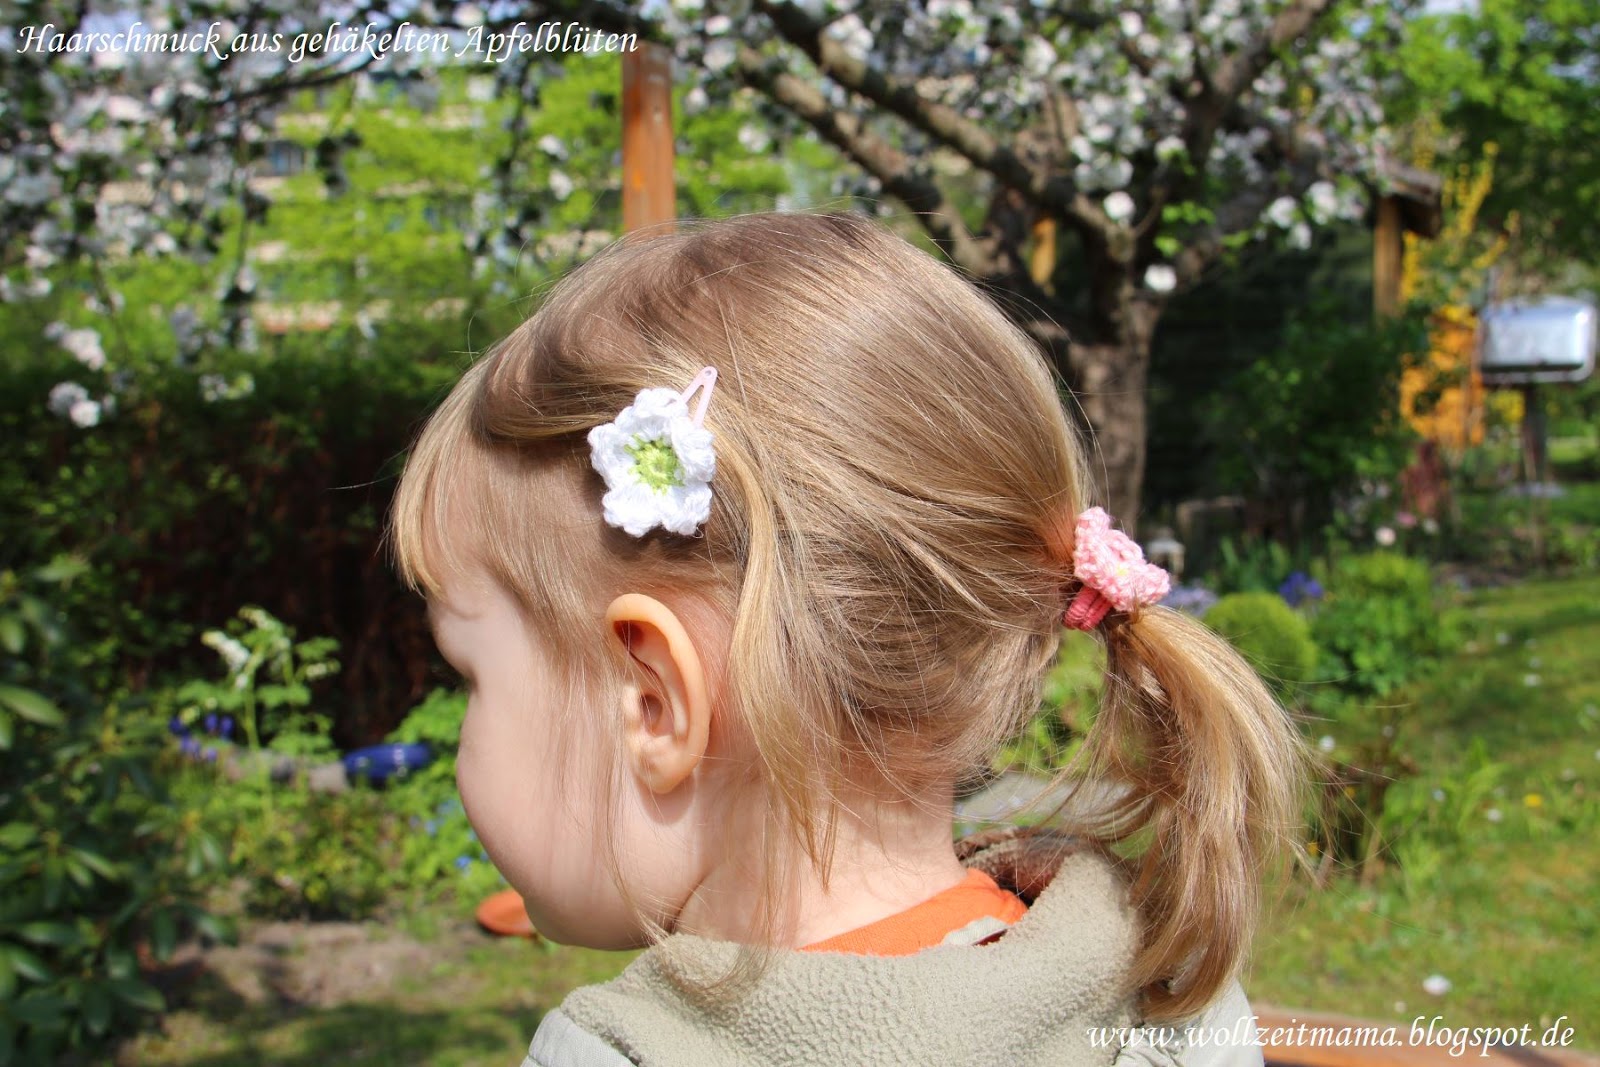 DIY : Haarschmuck selber machen mit gehäkelten Apfelblüten - by wollzeitmama